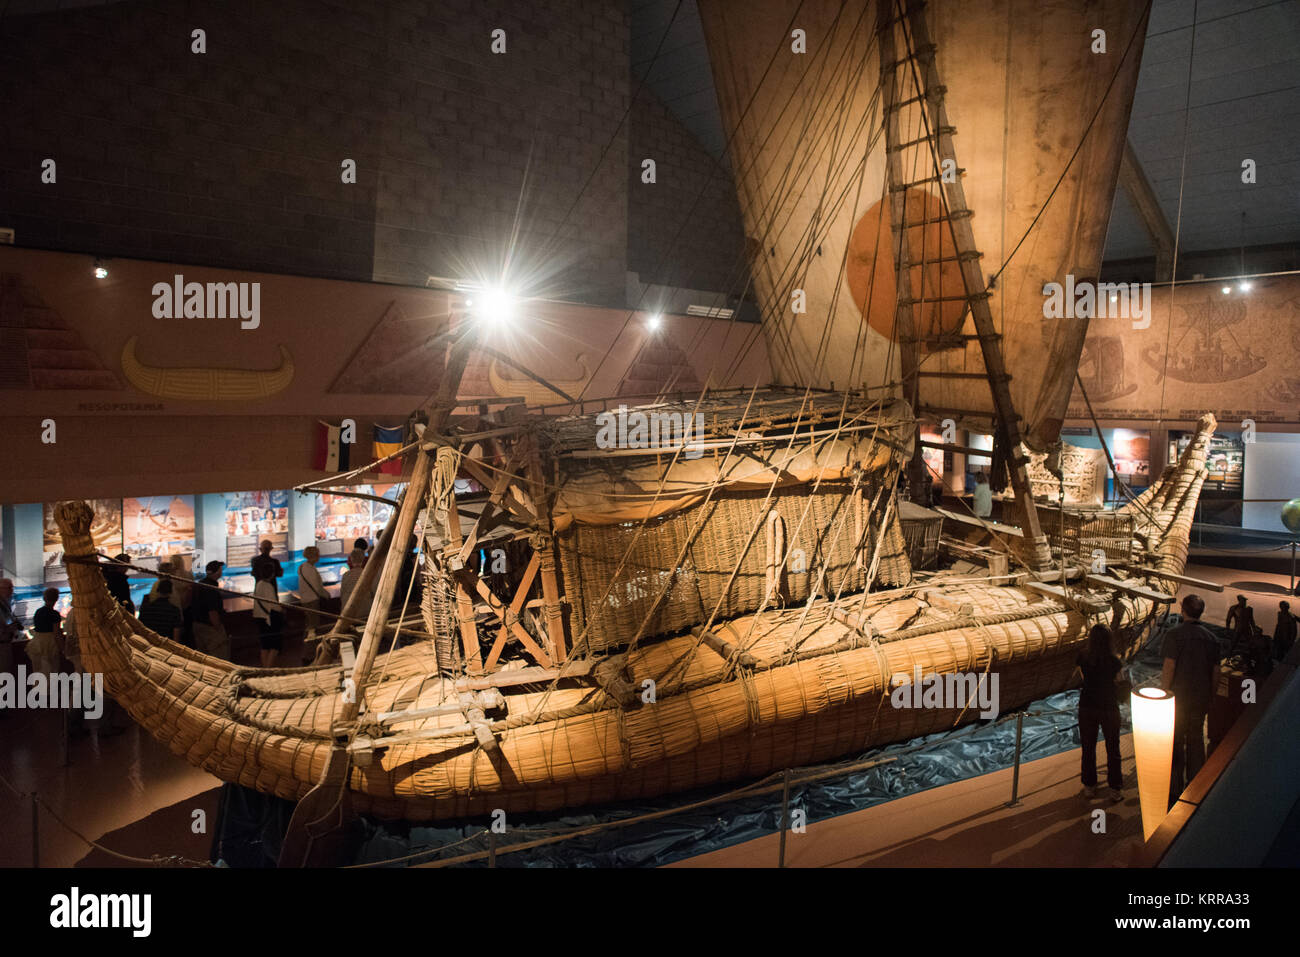 OSLO, Norwegen - Das Kon-Tiki-Museum in Oslo ist Die Kon-Tiki Expedition gewidmet, einer 1947 Reise mit dem Floß über den Pazifik von Südamerika zu den Polynesischen Inseln, geführt durch norwegische Forscher und Schriftsteller Thor Heyerdahl. Das Museum zeigt den ursprünglichen Kon-Tiki aus Balsaholz Schiff sowie die Ra II, ein Boot überwiegend aus Schilf, Heyerdahl aus Nordafrika in die Karibik gesegelt. Stockfoto